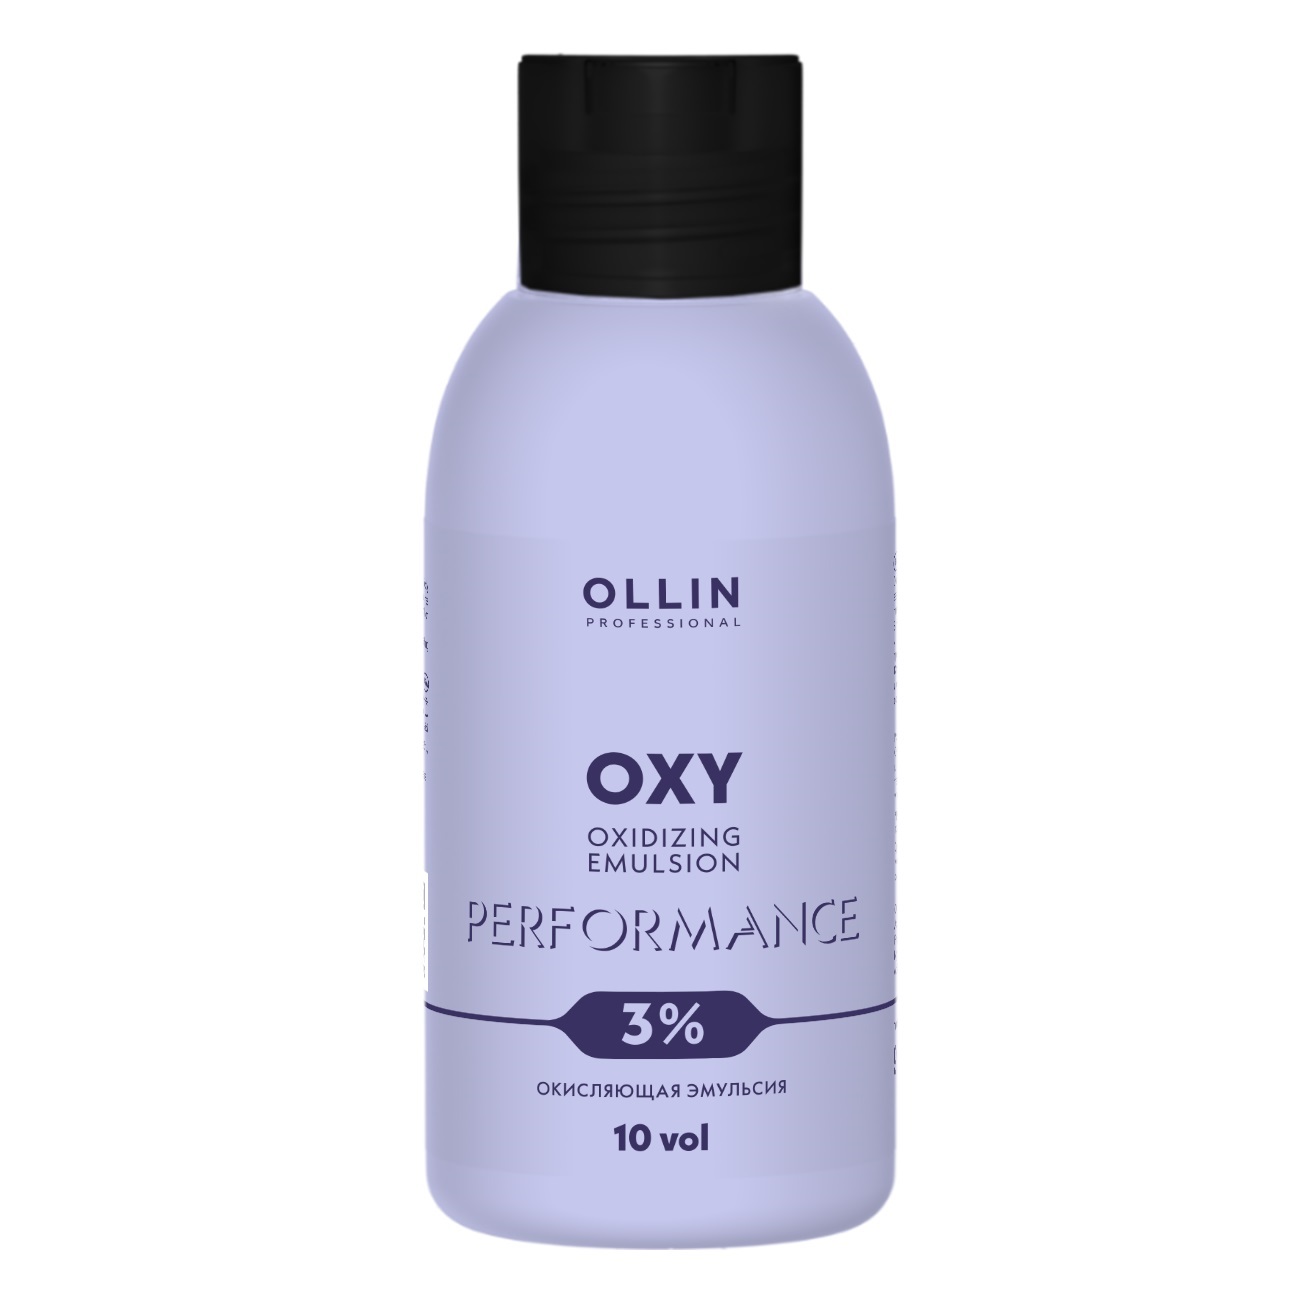 Ollin Professional Окисляющая эмульсия 3% 10 vol, 90 мл (Oll